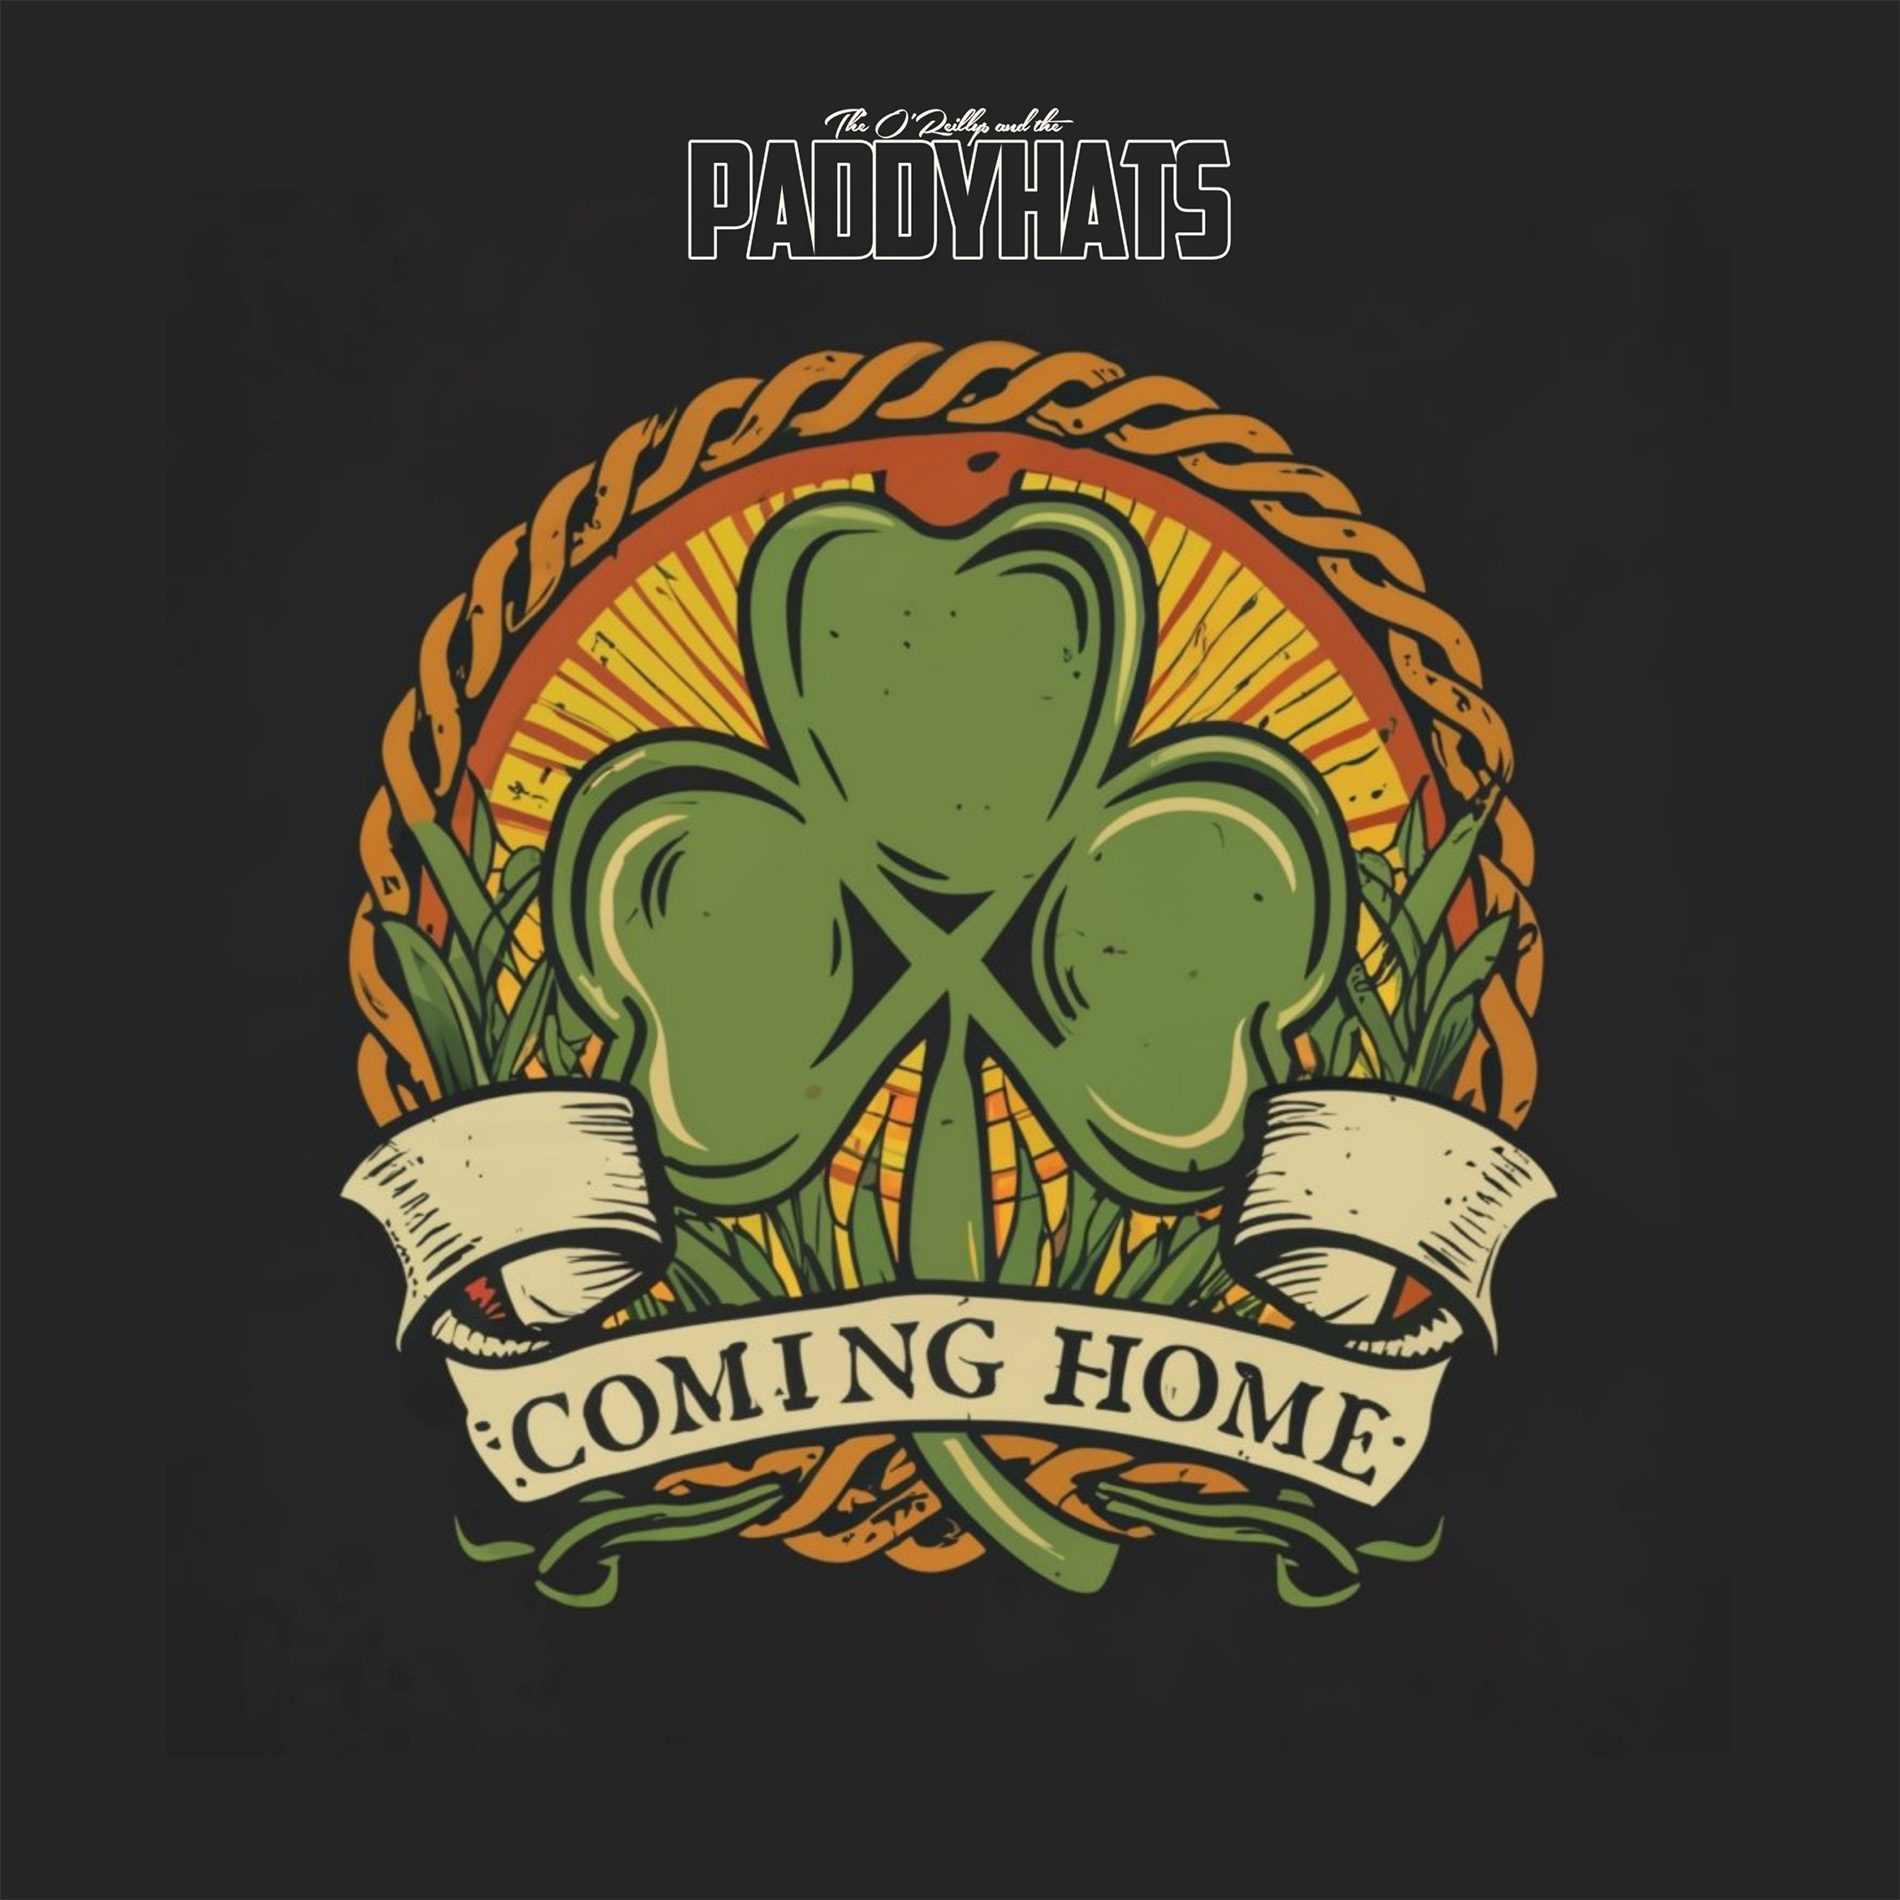 Хотите самую зеленую ночь в году? — Послушайте наш новый сингл «Coming Home For St. Patrick’s Day»